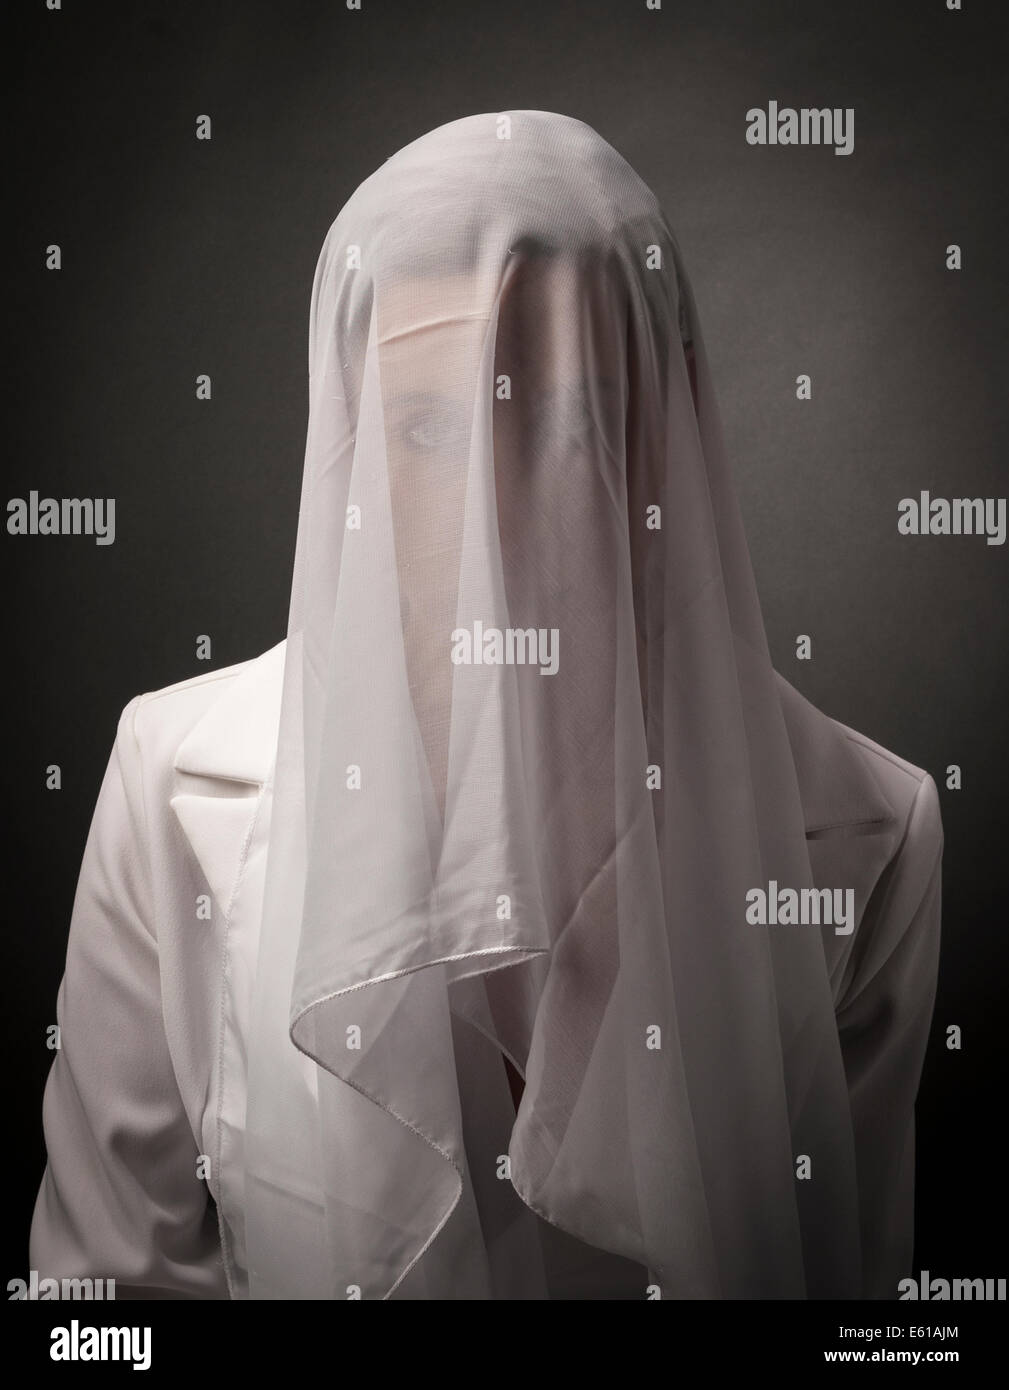 https://c8.alamy.com/comp/E61AJM/mysterious-woman-with-white-veil-E61AJM.jpg